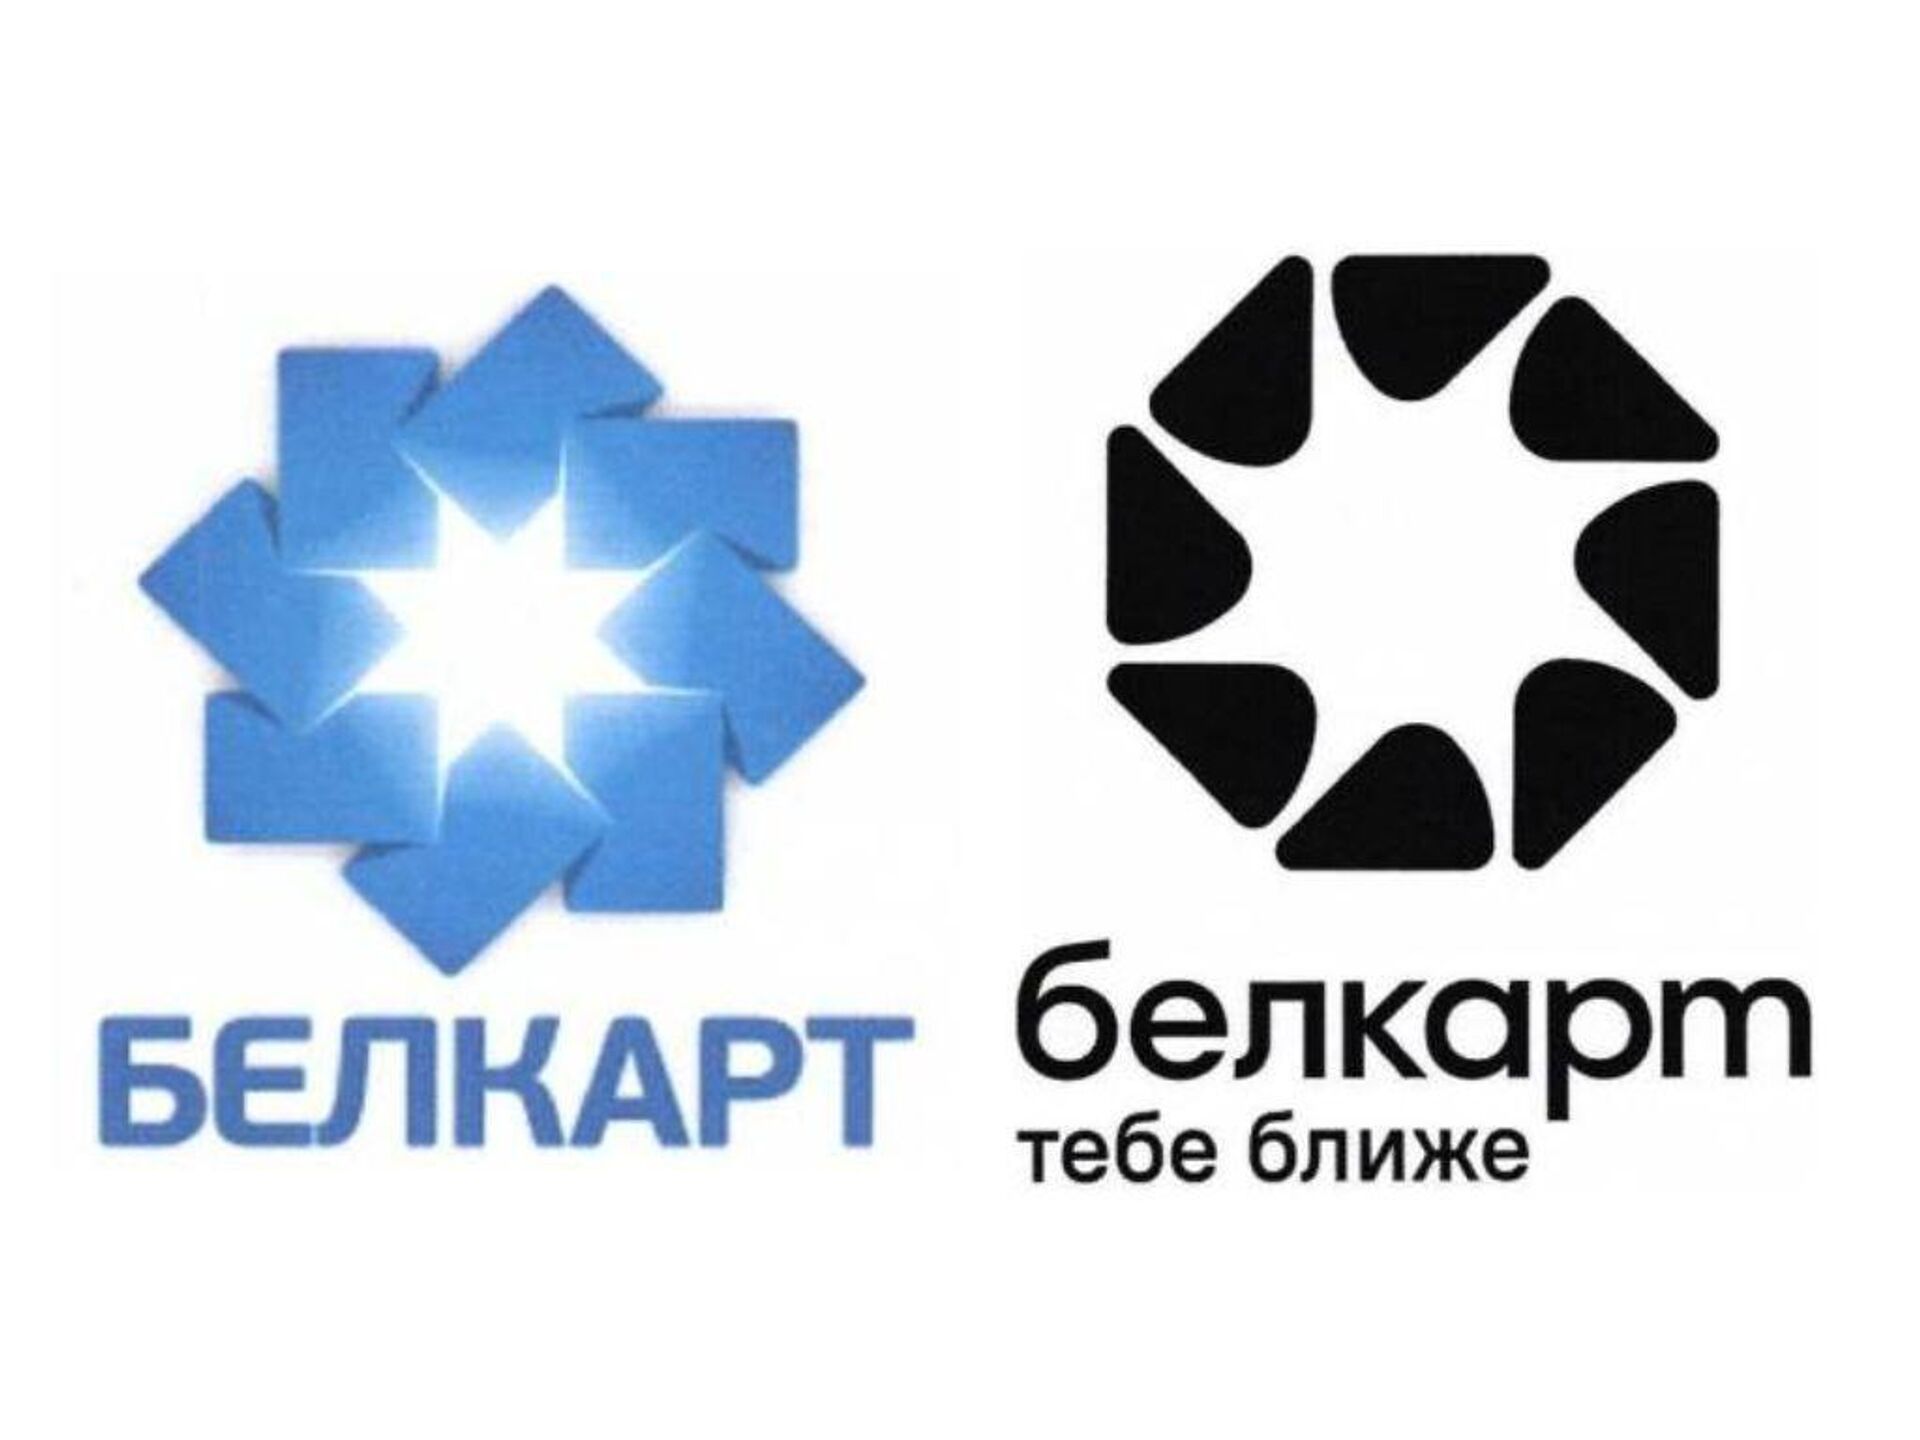 Новый логотип (справа) будет схож с предыдущим, но дизайнеры предложили более минималистичный вариант с другим шрифтом.  - Sputnik Беларусь, 1920, 21.03.2023